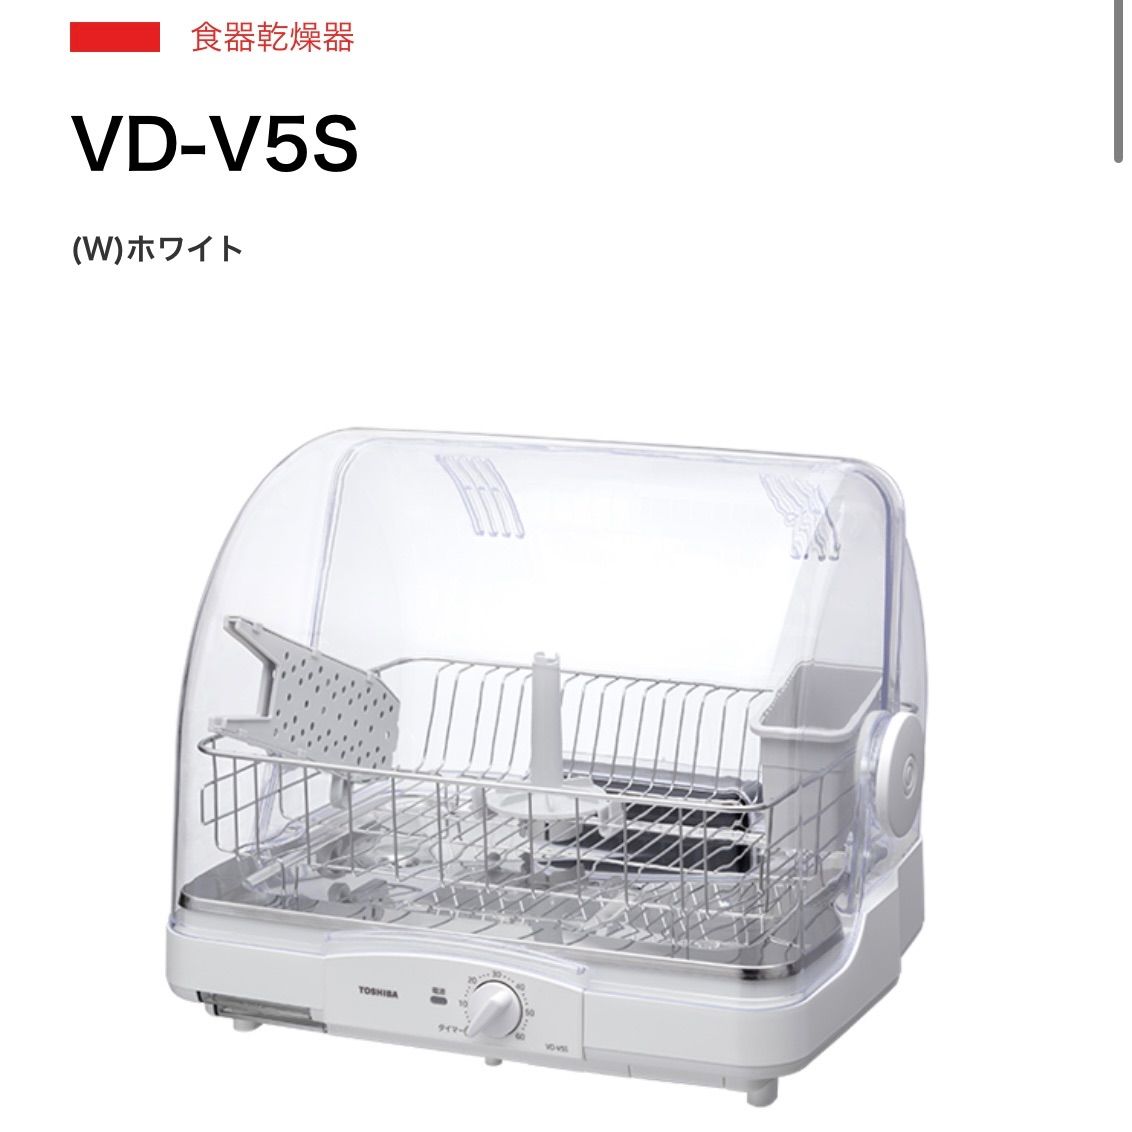 東芝 VD-V5S(W) 食器乾燥器 ホワイト VDV5S(W) - キッチン家電